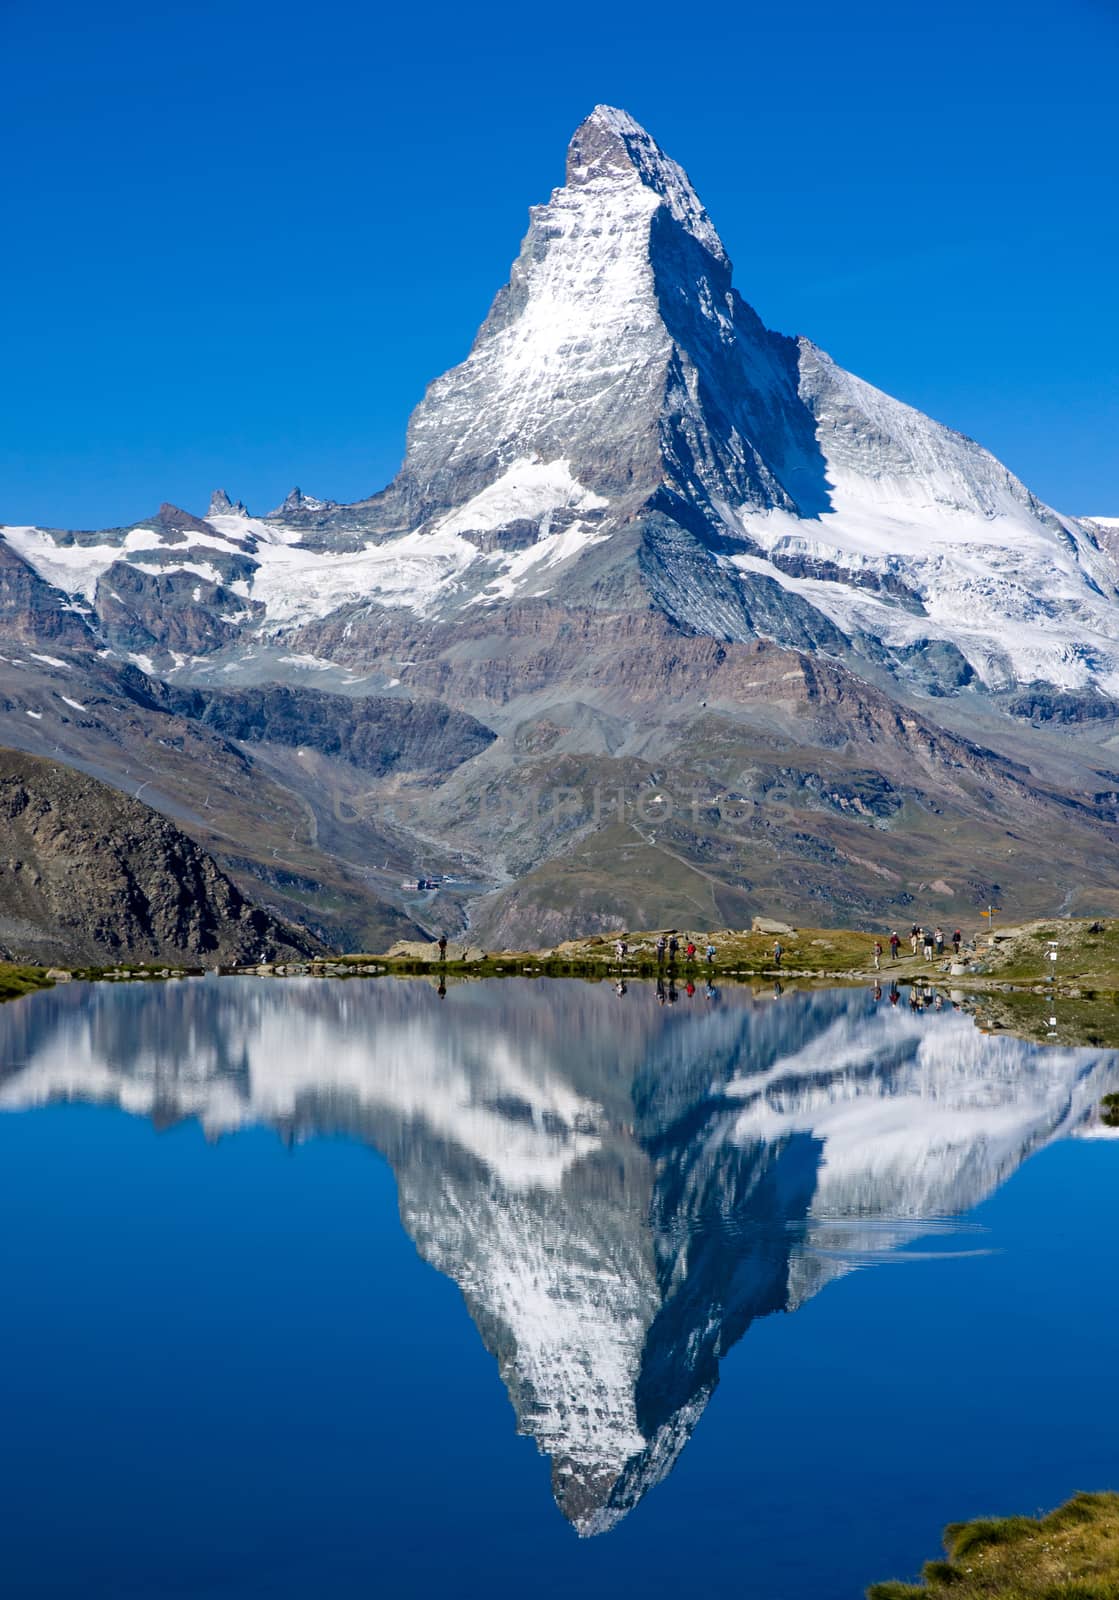 The Matterhorn in the Alps in Switzerland